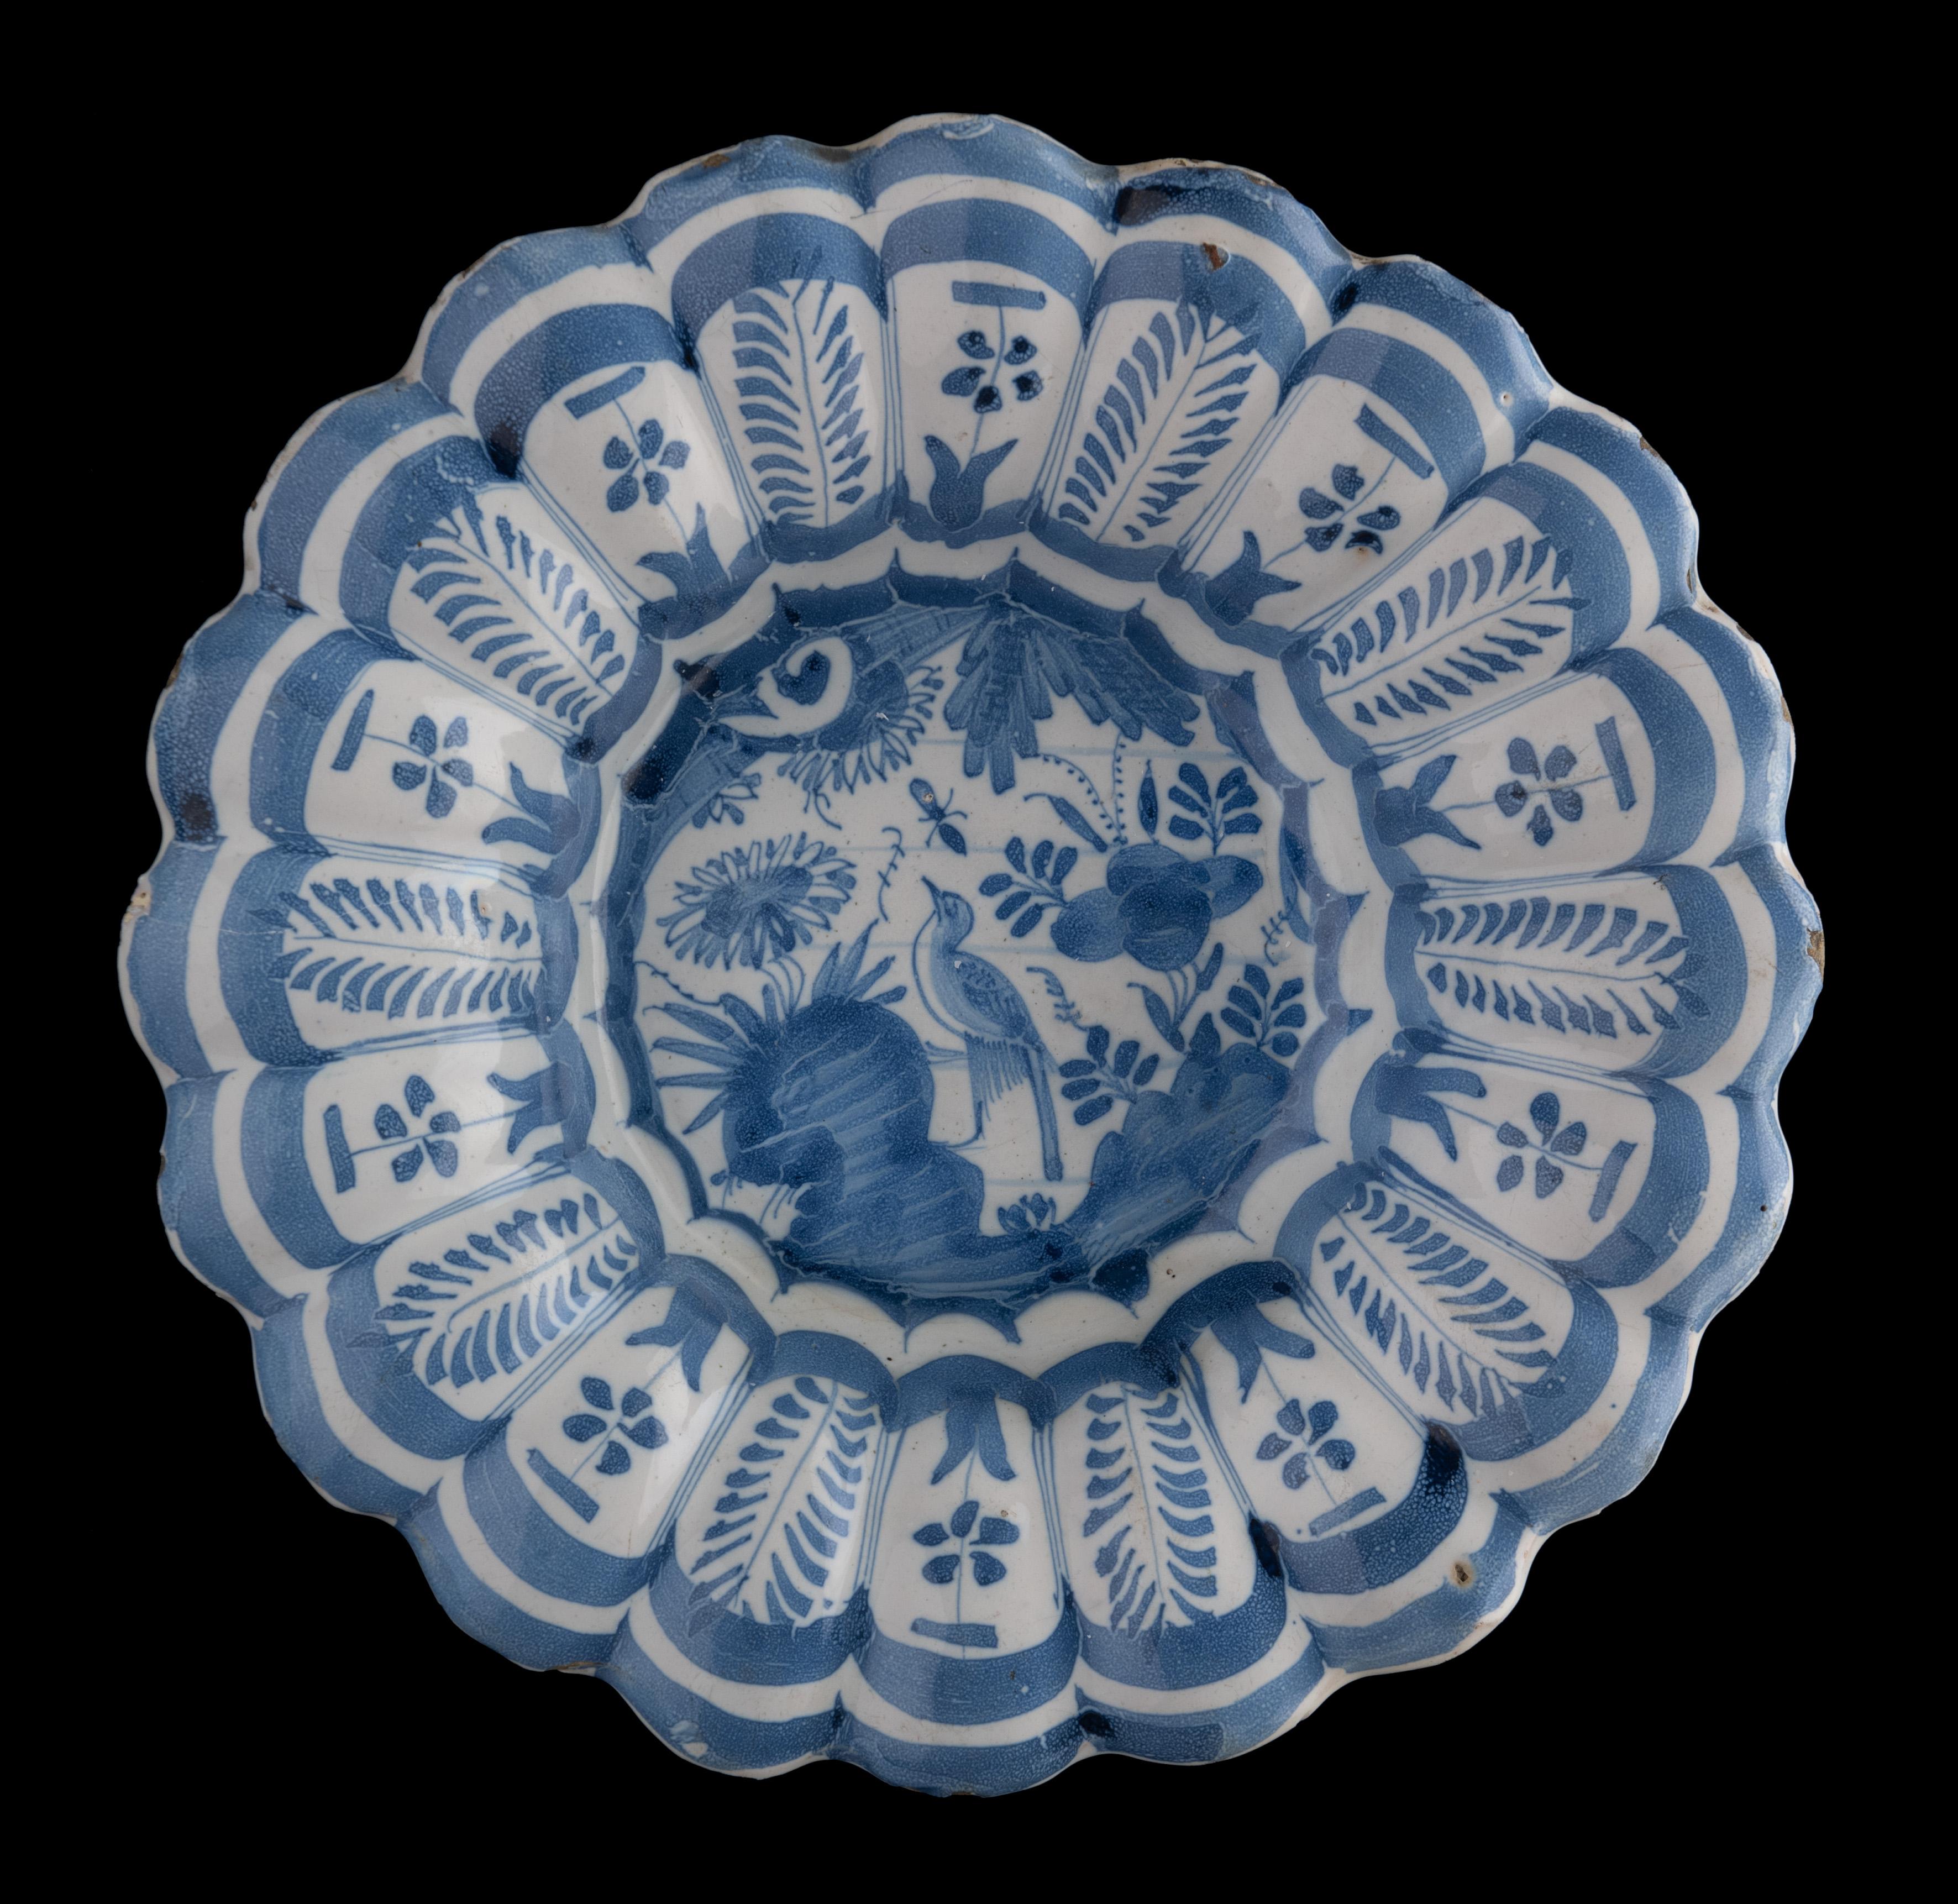 Blaue und weiße Chinoiserie-Schale mit Lappen
Die Niederlande, 1630-1650

Die blau-weiß gelappte Schale besteht aus zwanzig kleinen Lappen und ist in der Mitte mit einem floralen Chinoiserie-Dekor bemalt, das einen Vogel auf einem Felsen zwischen